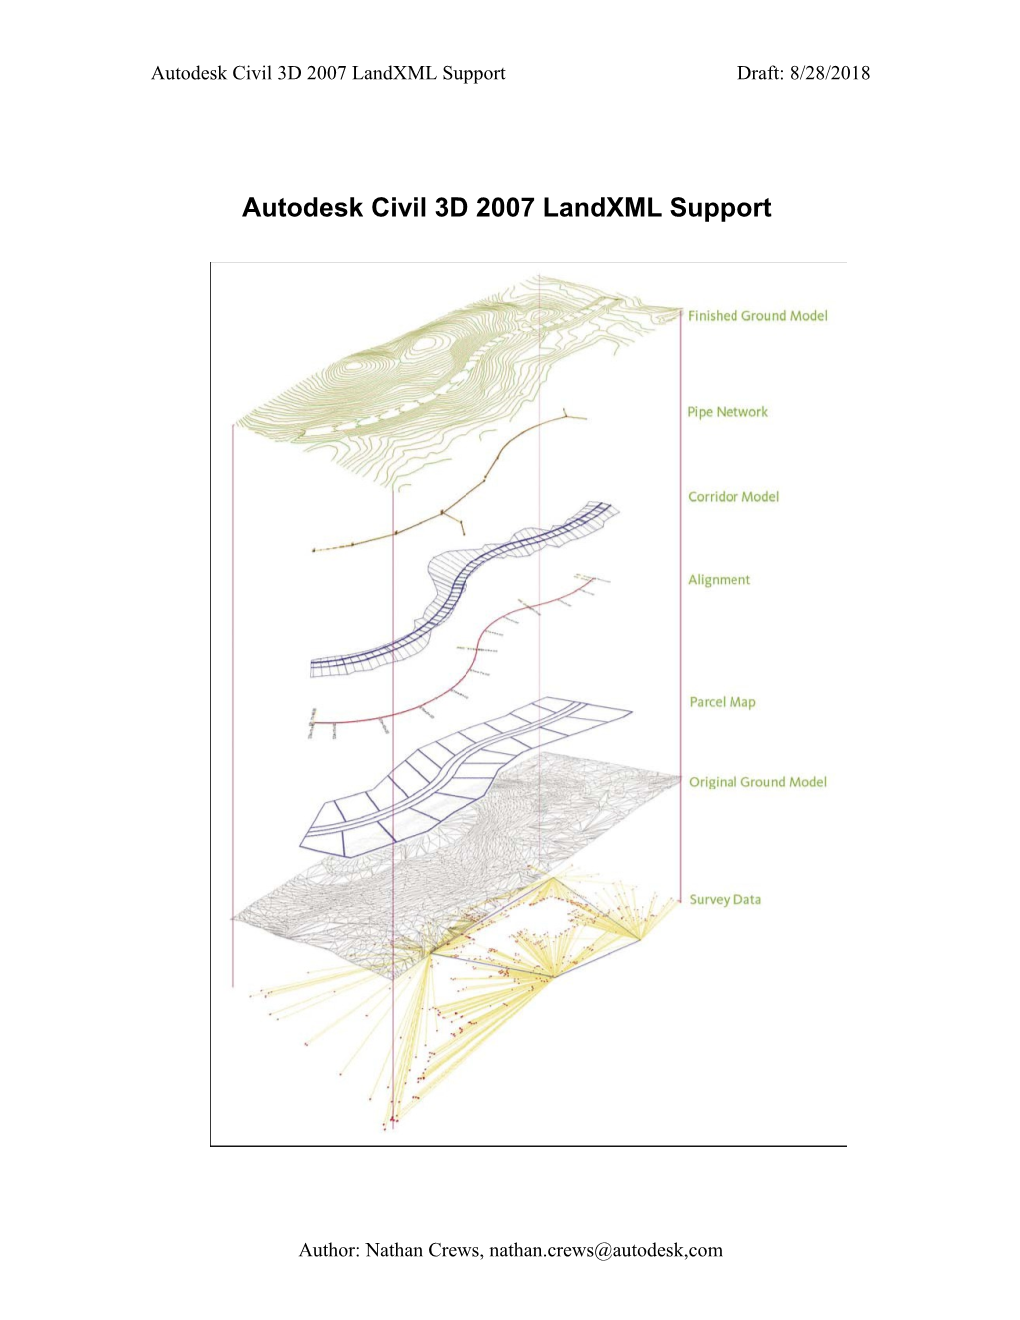 Autodesk Civil 3D Landxml Support